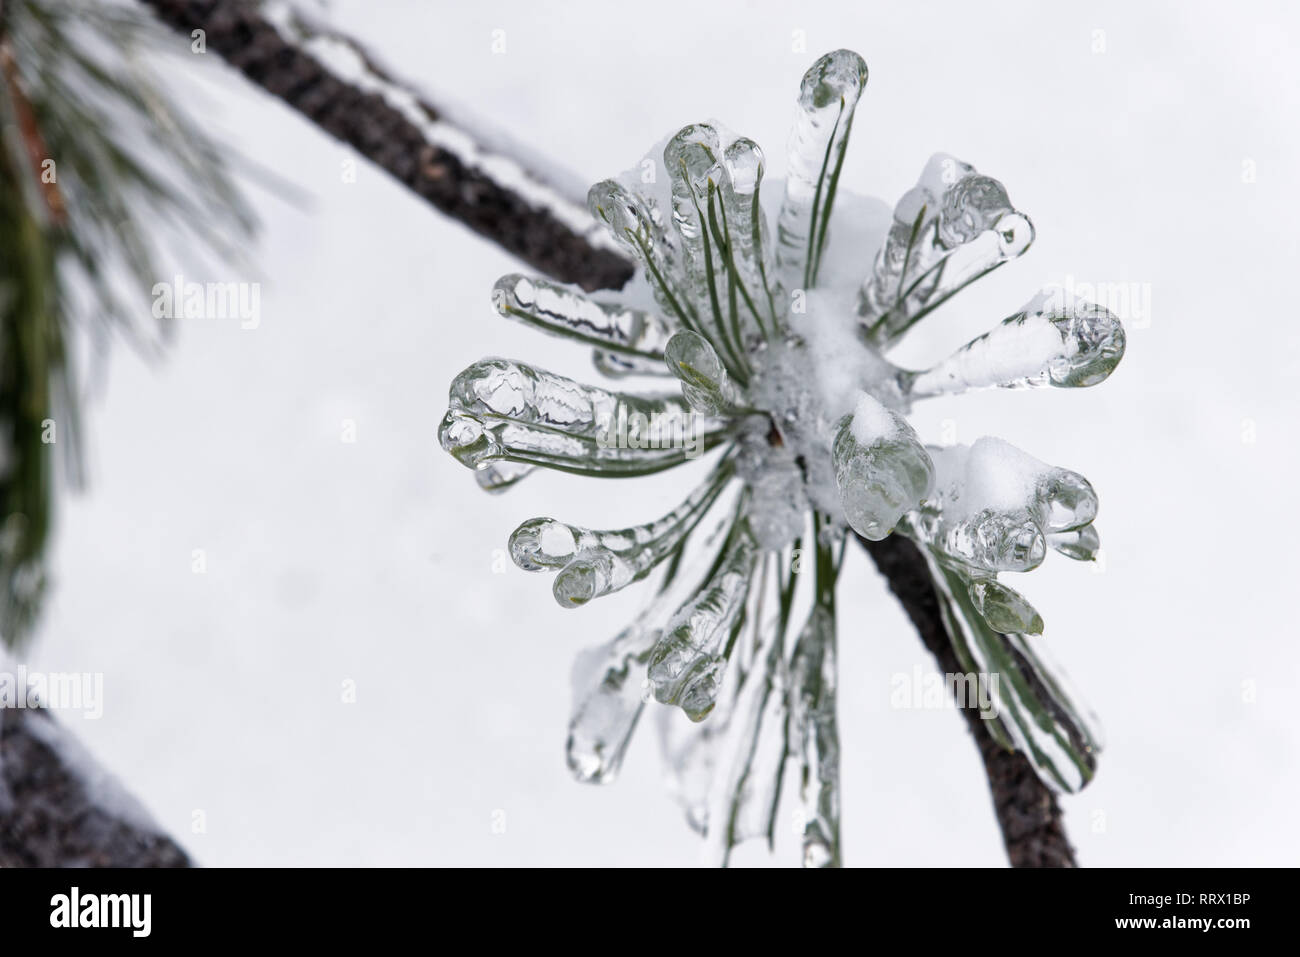 Les aiguilles de pin enrobé de glace après la pluie verglaçante au Québec, Canada Banque D'Images